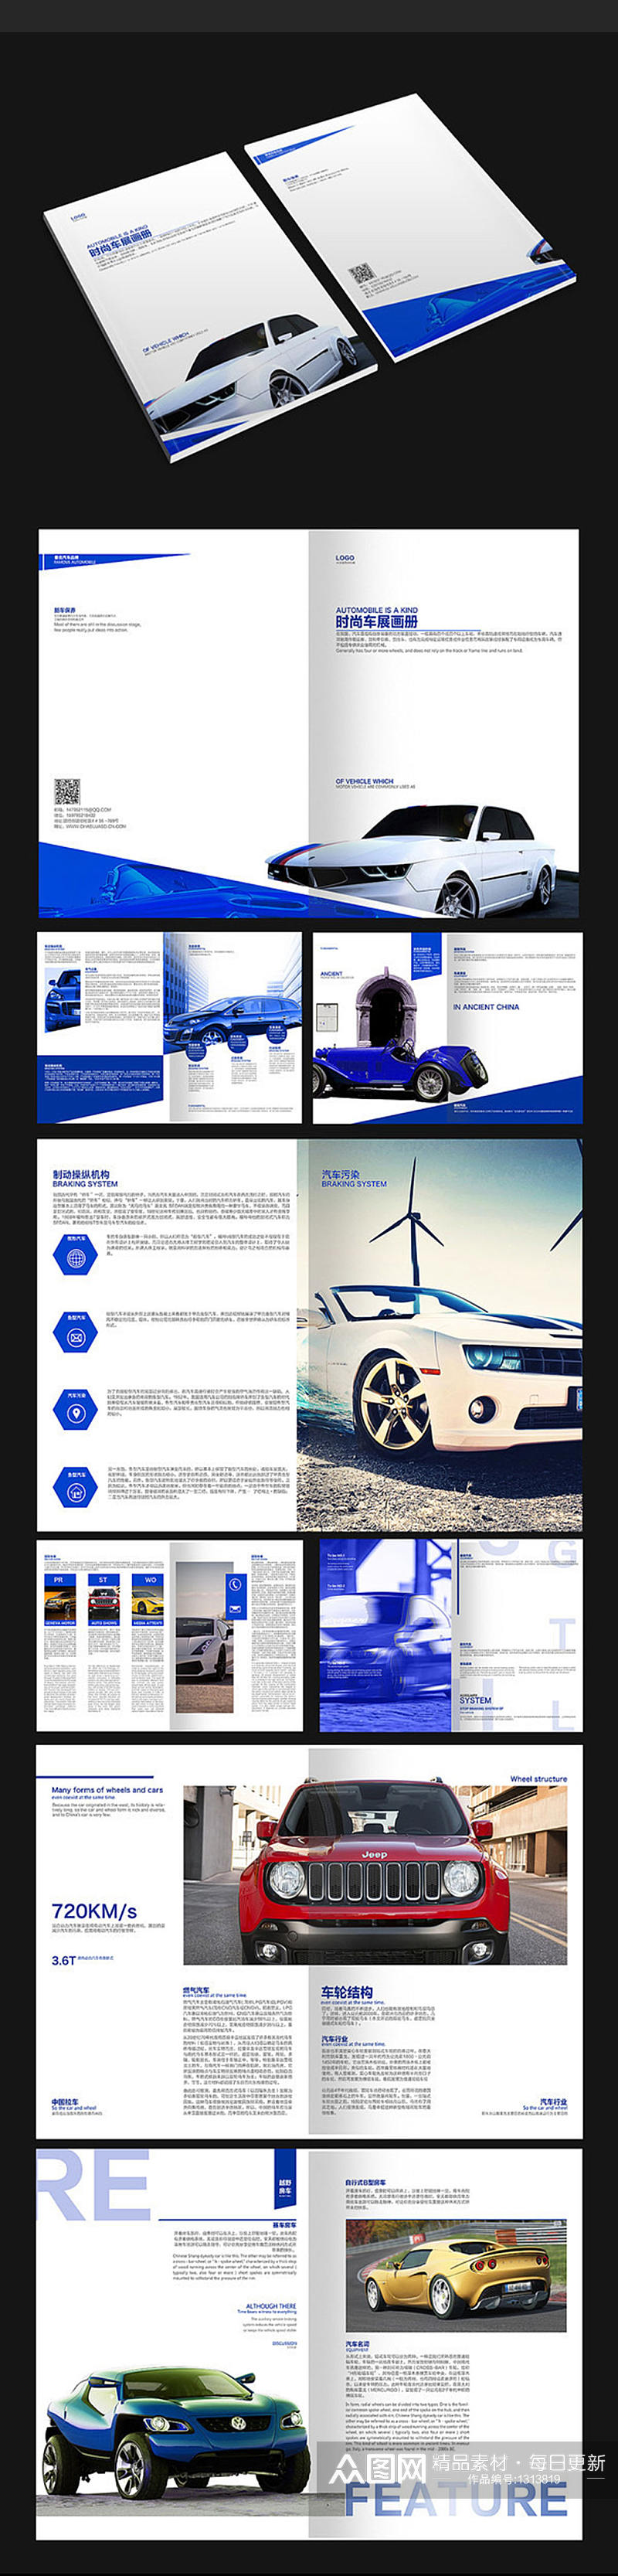 蓝色车展画册设计素材